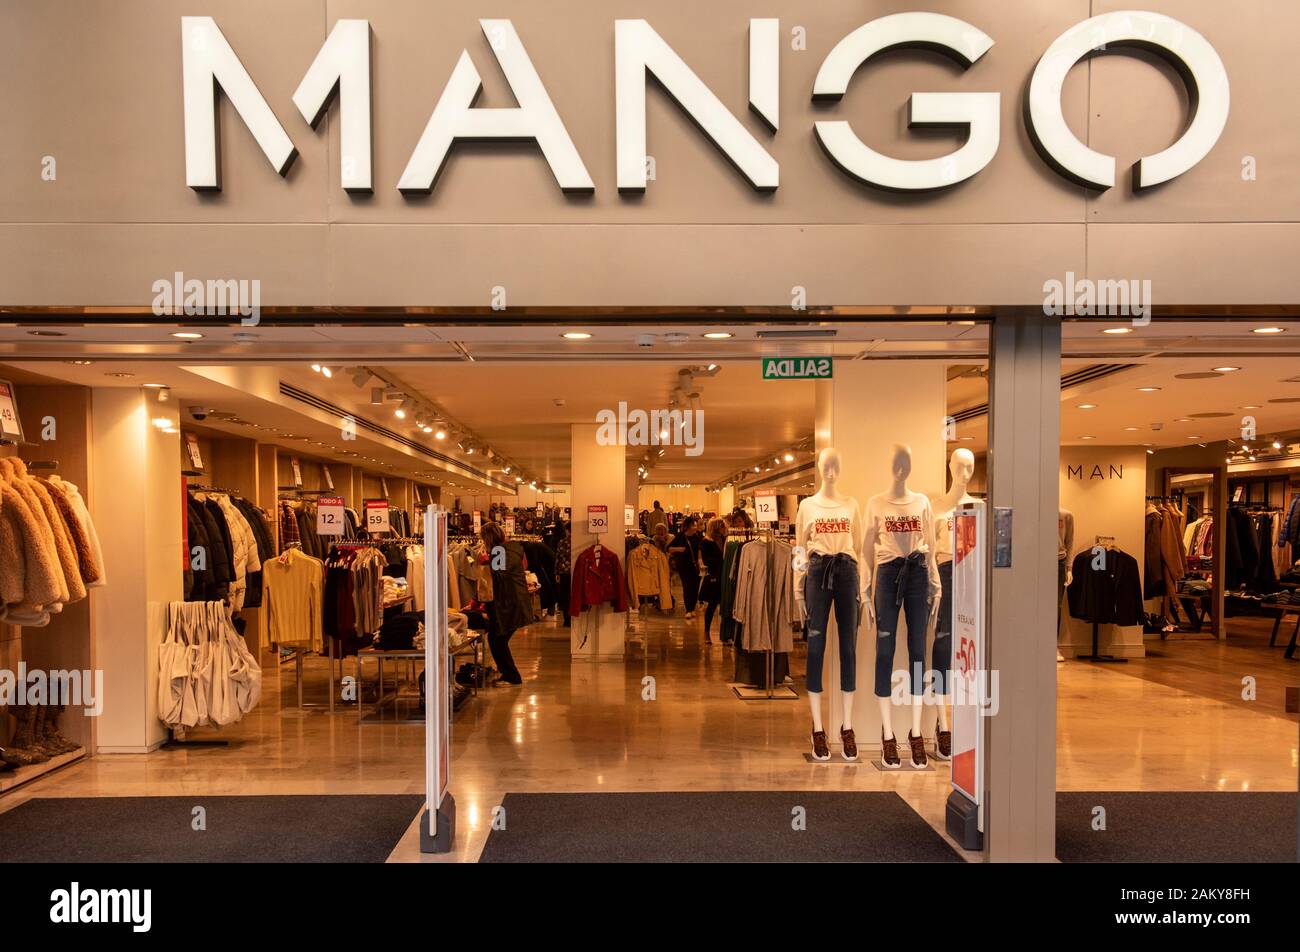 Valiente Sociable Distinción La multinacional española marca de ropa tienda de Mango en España  Fotografía de stock - Alamy